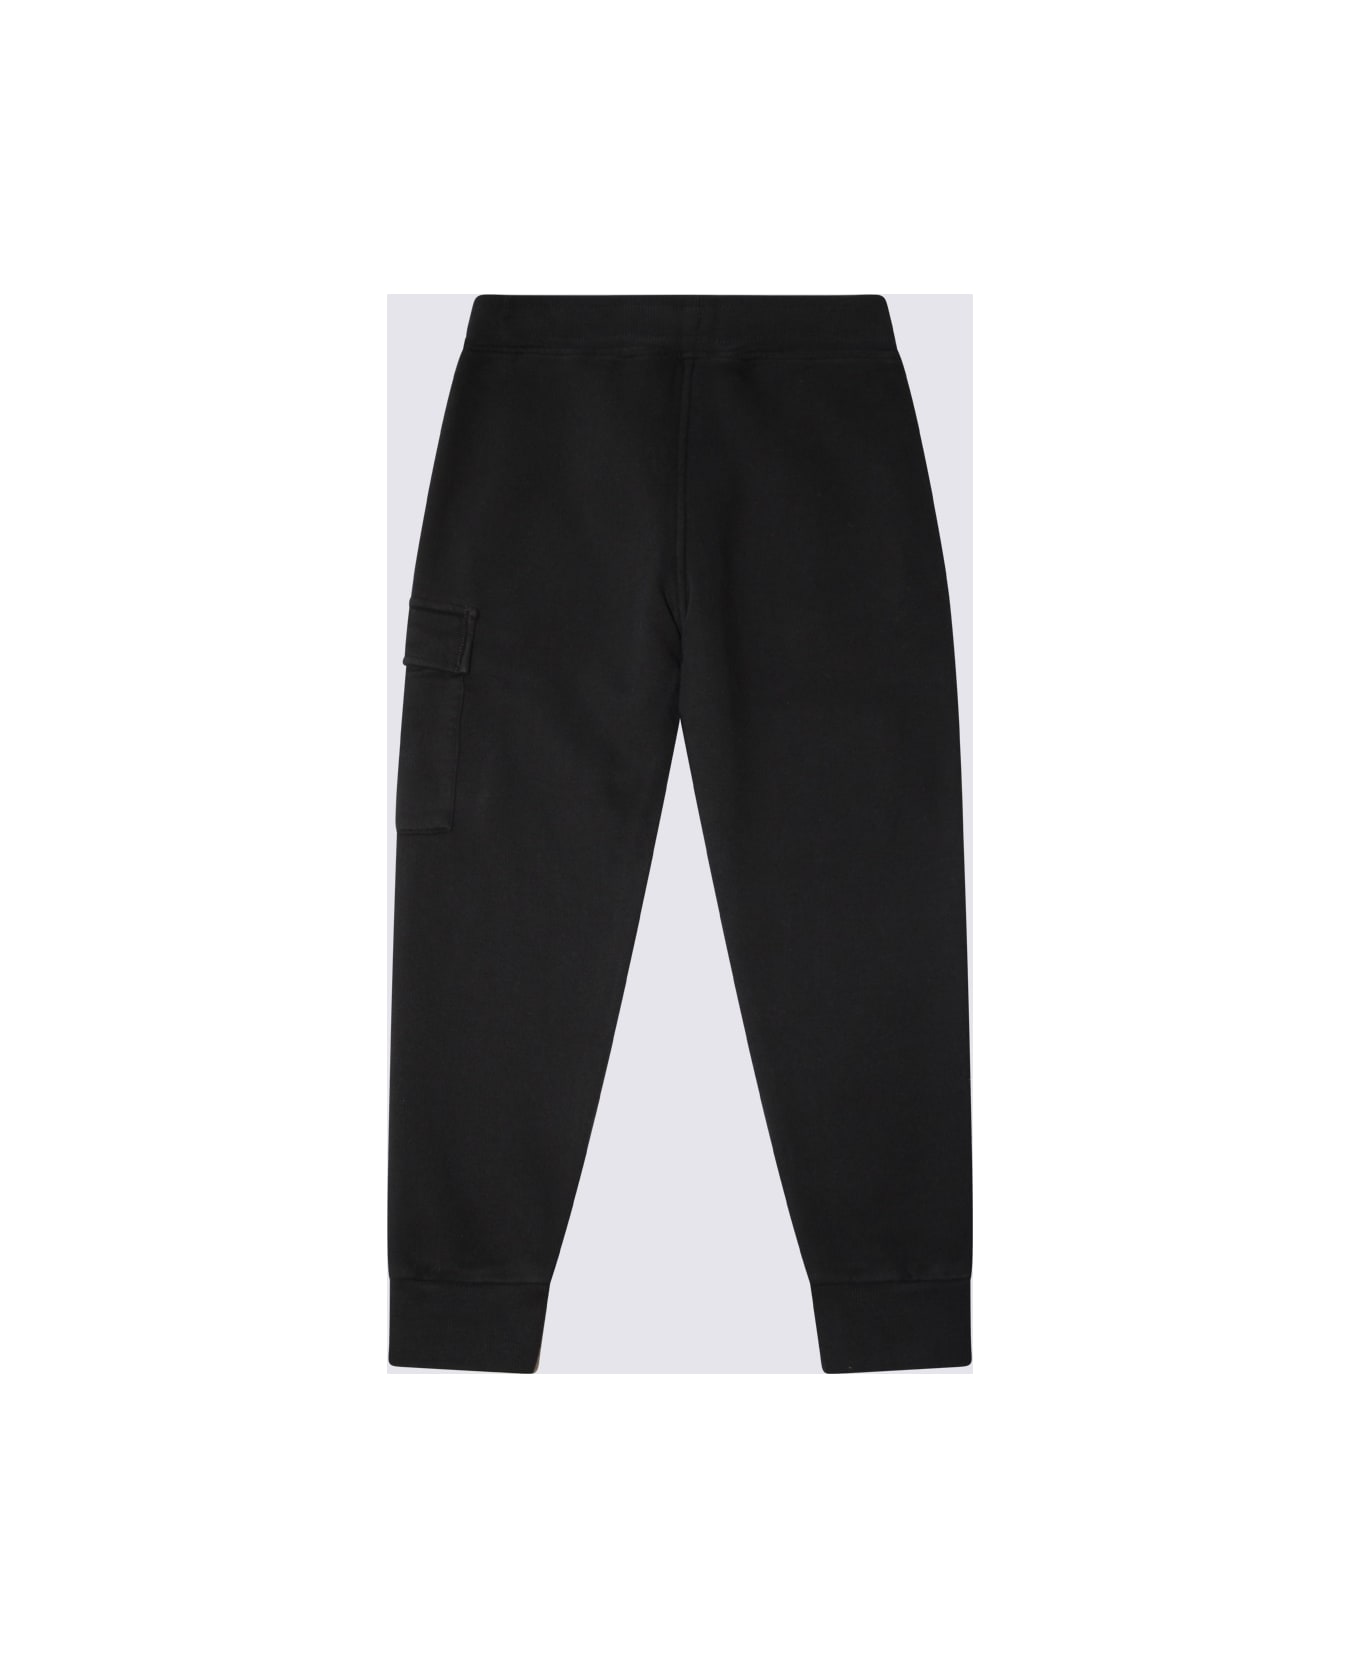 C.P. Company Undersixteen Black Cotton Pants - Nero/Black ボトムス